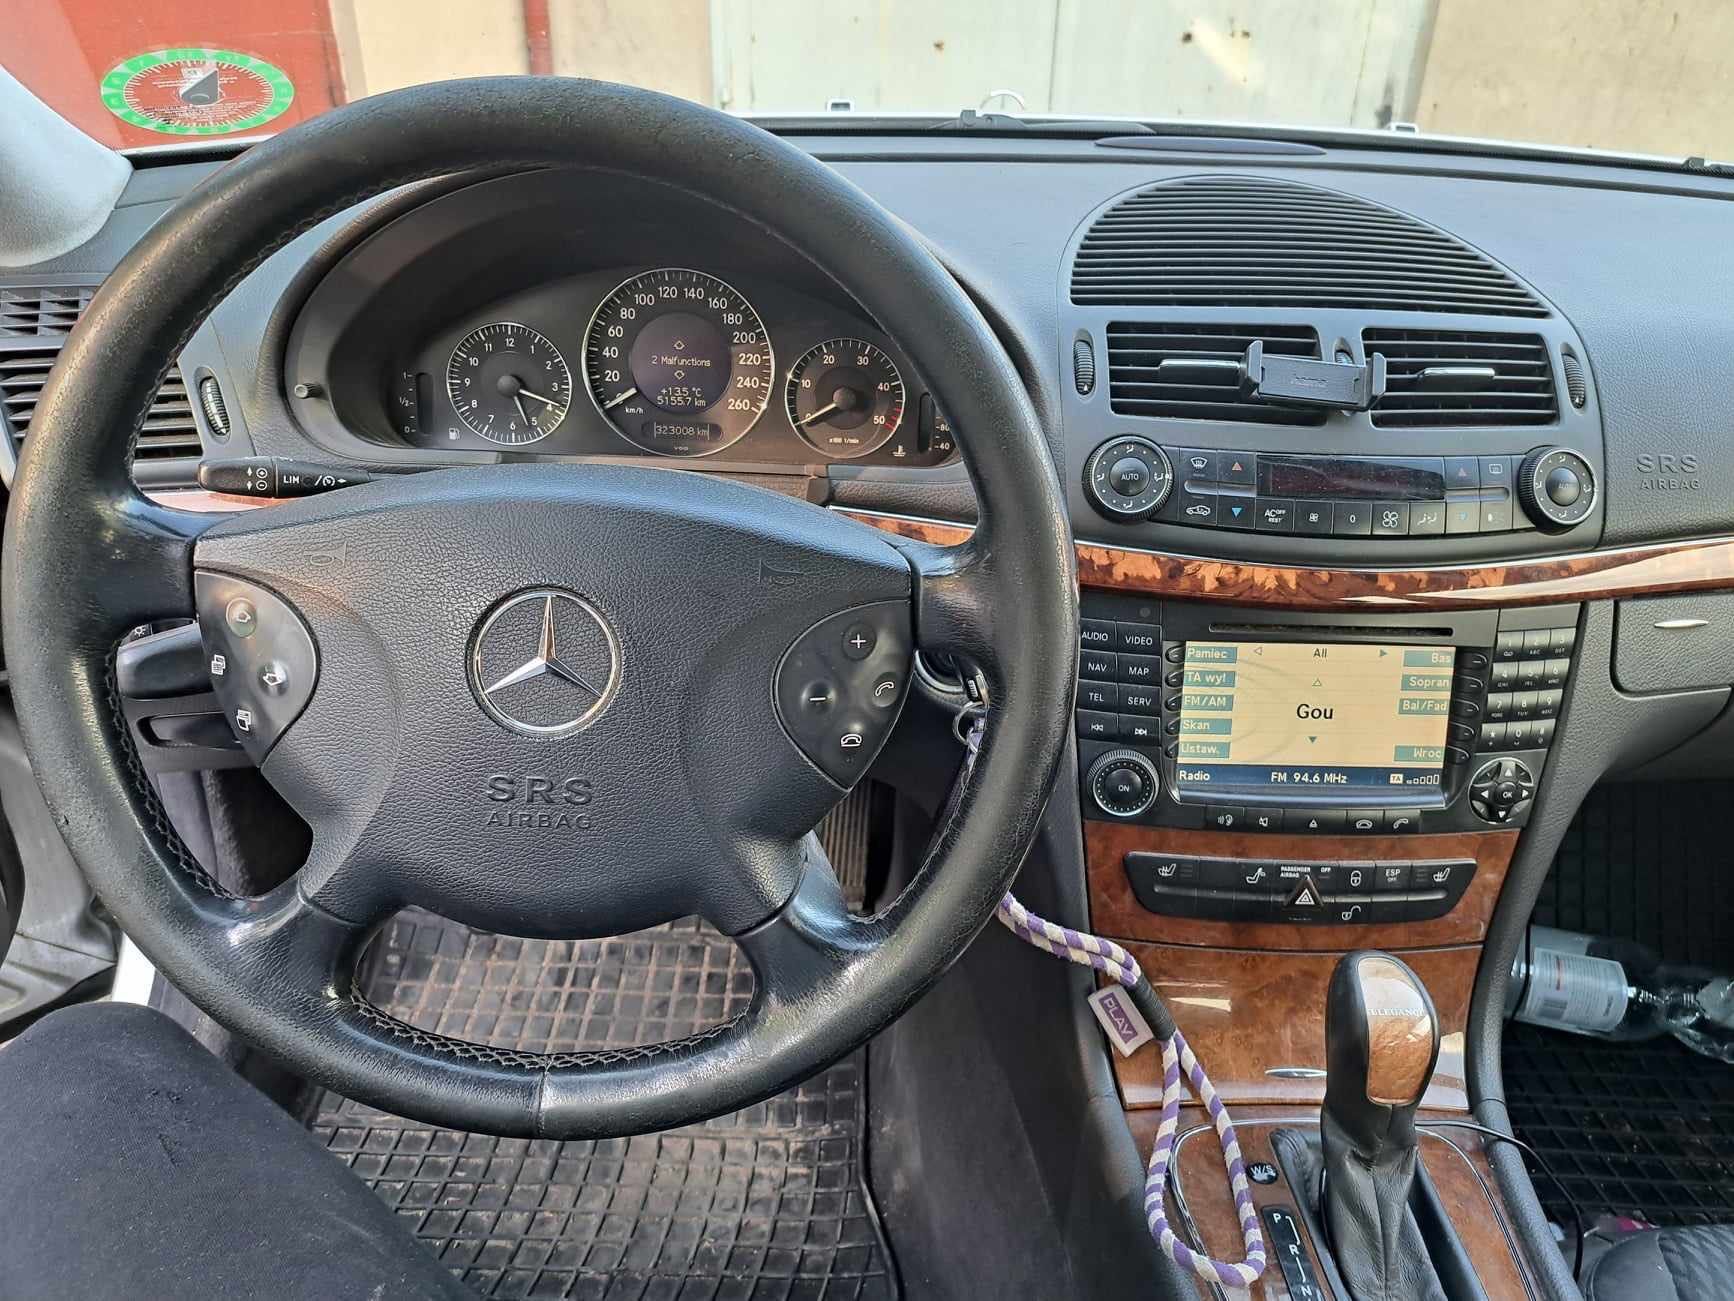 Mercedes W211 3.2R6